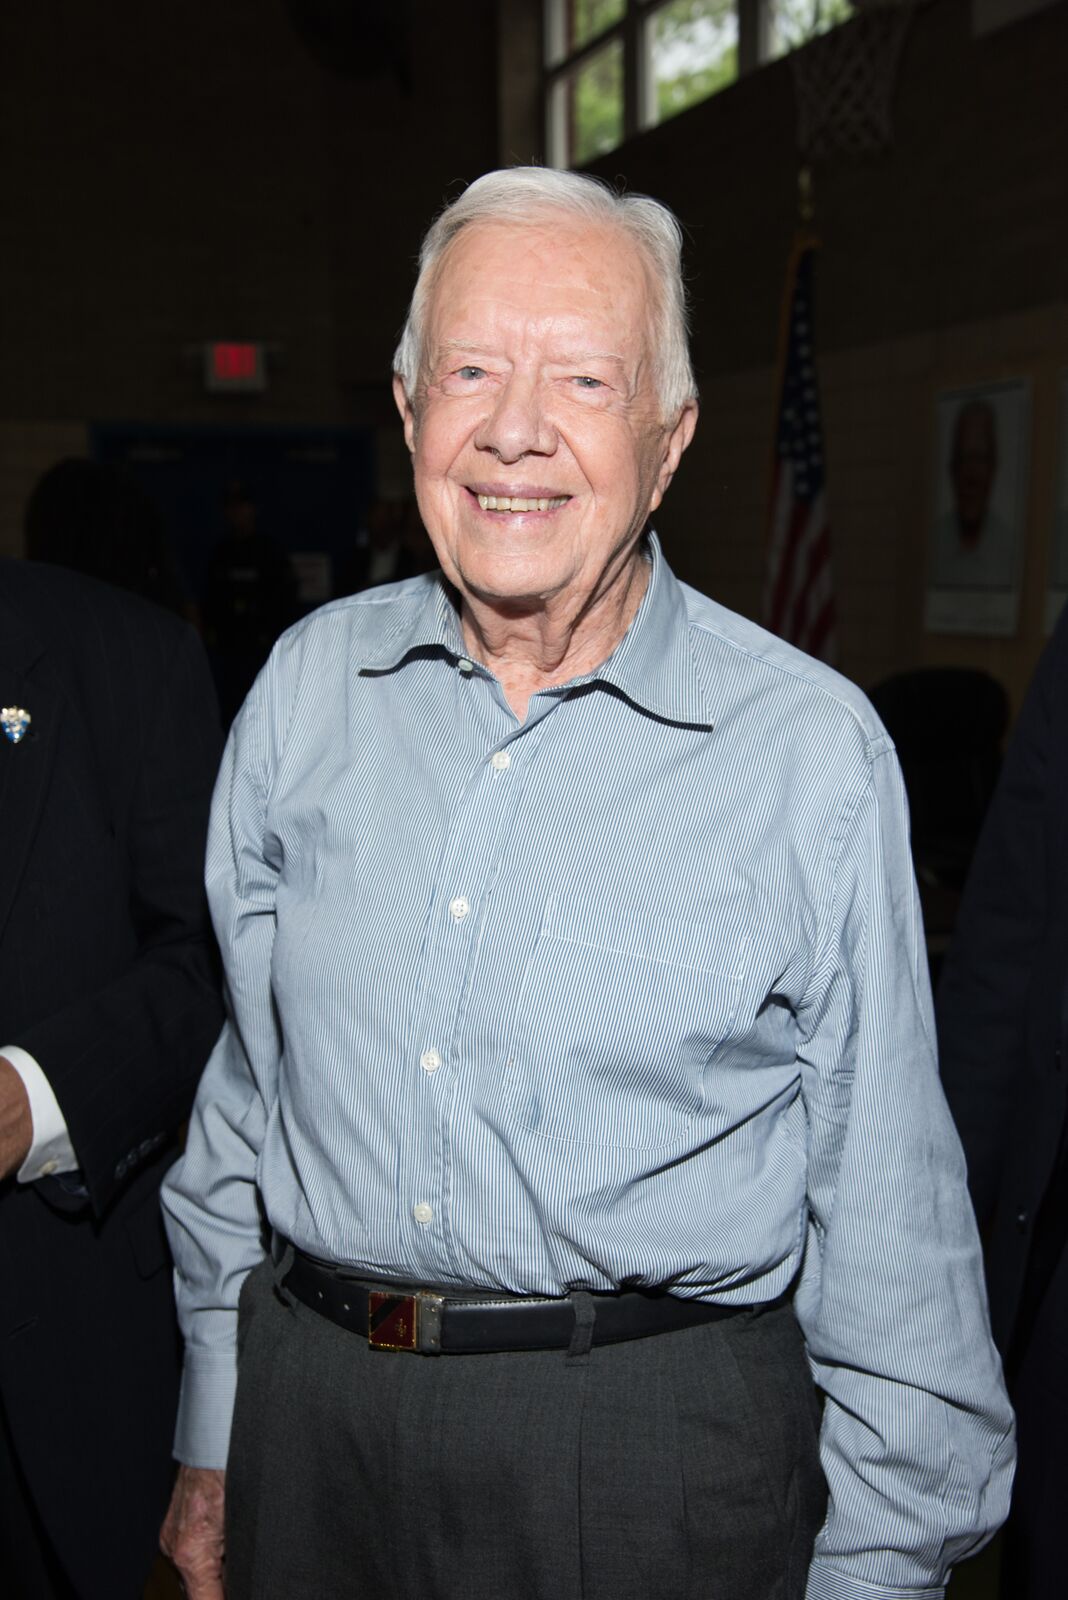 L'ancien président des États-Unis Jimmy Carter signe des exemplaires du livre "A Full Life Reflections At Ninety" à Bookends Bookstore, le 8 juillet 2015 à Ridgewood, New Jersey | Photo : Getty Images